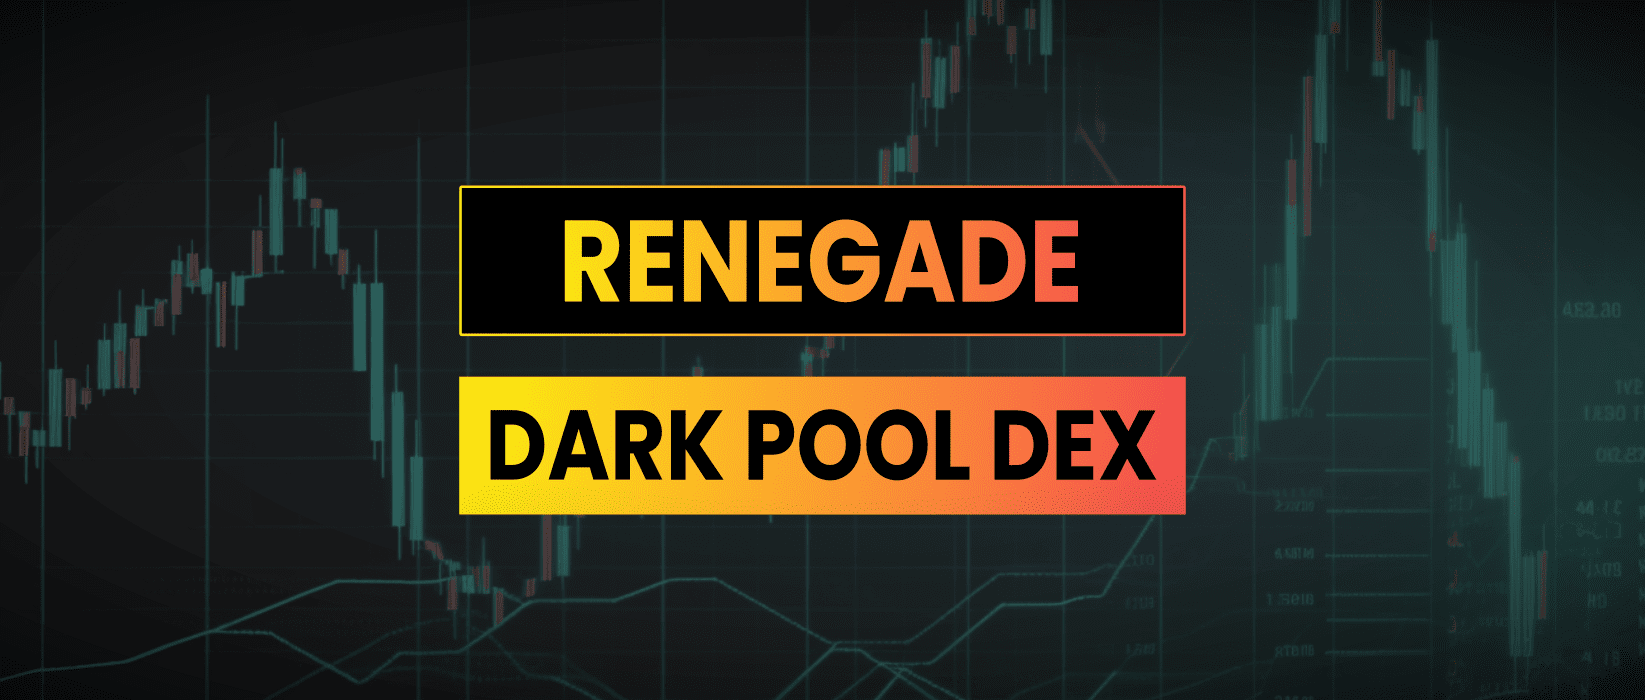 Renegade Dark Pool DEX